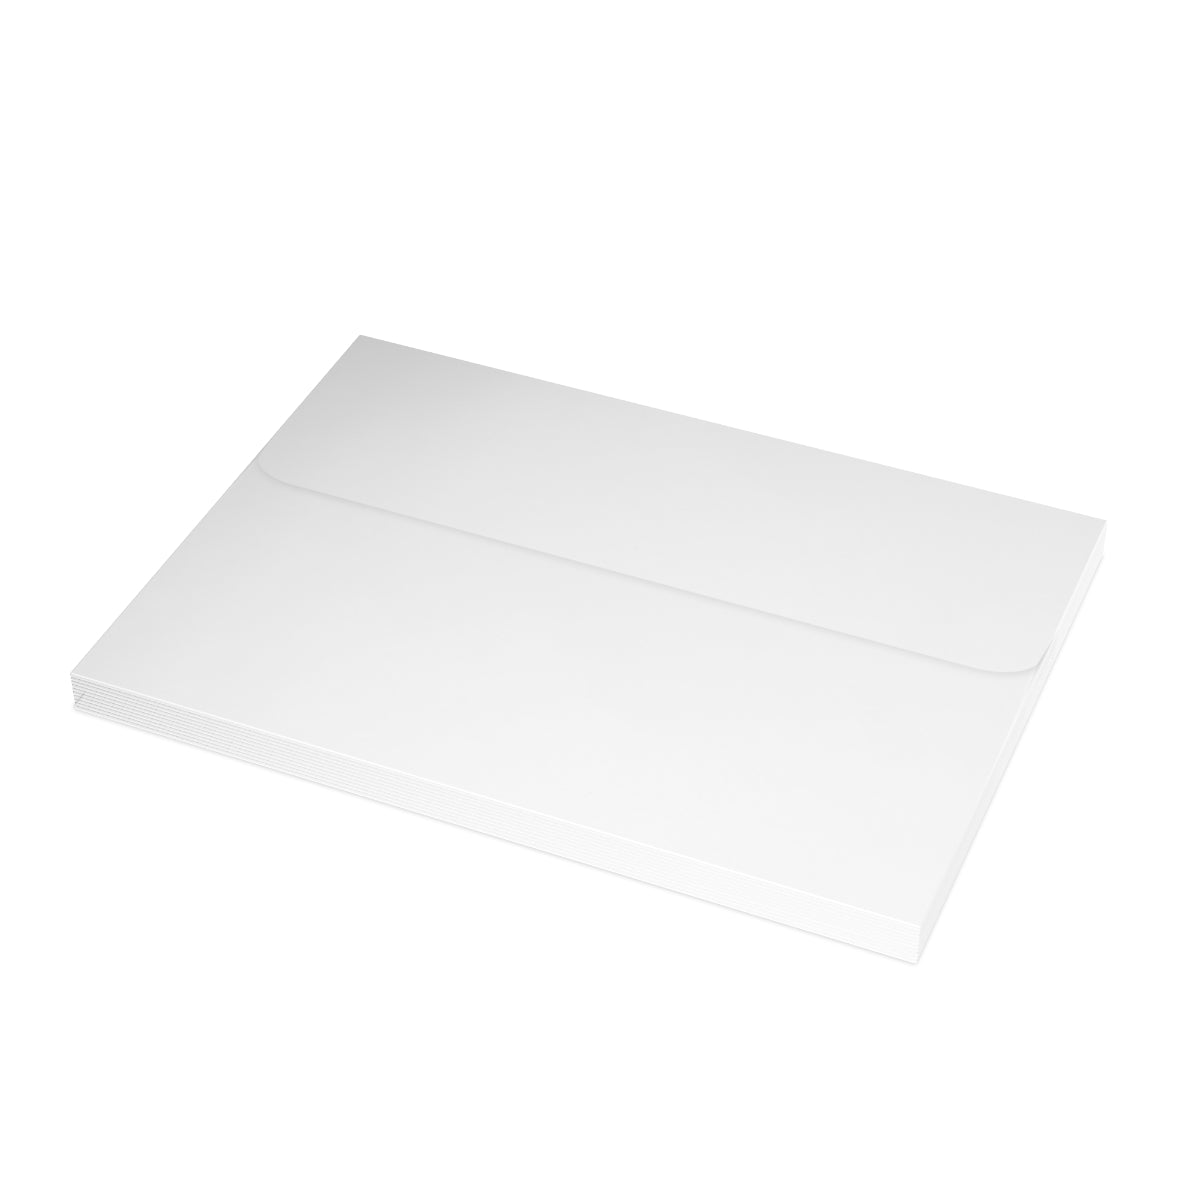 Portland, Oregon Folded Matte Notecards + Envelopes (10pcs)